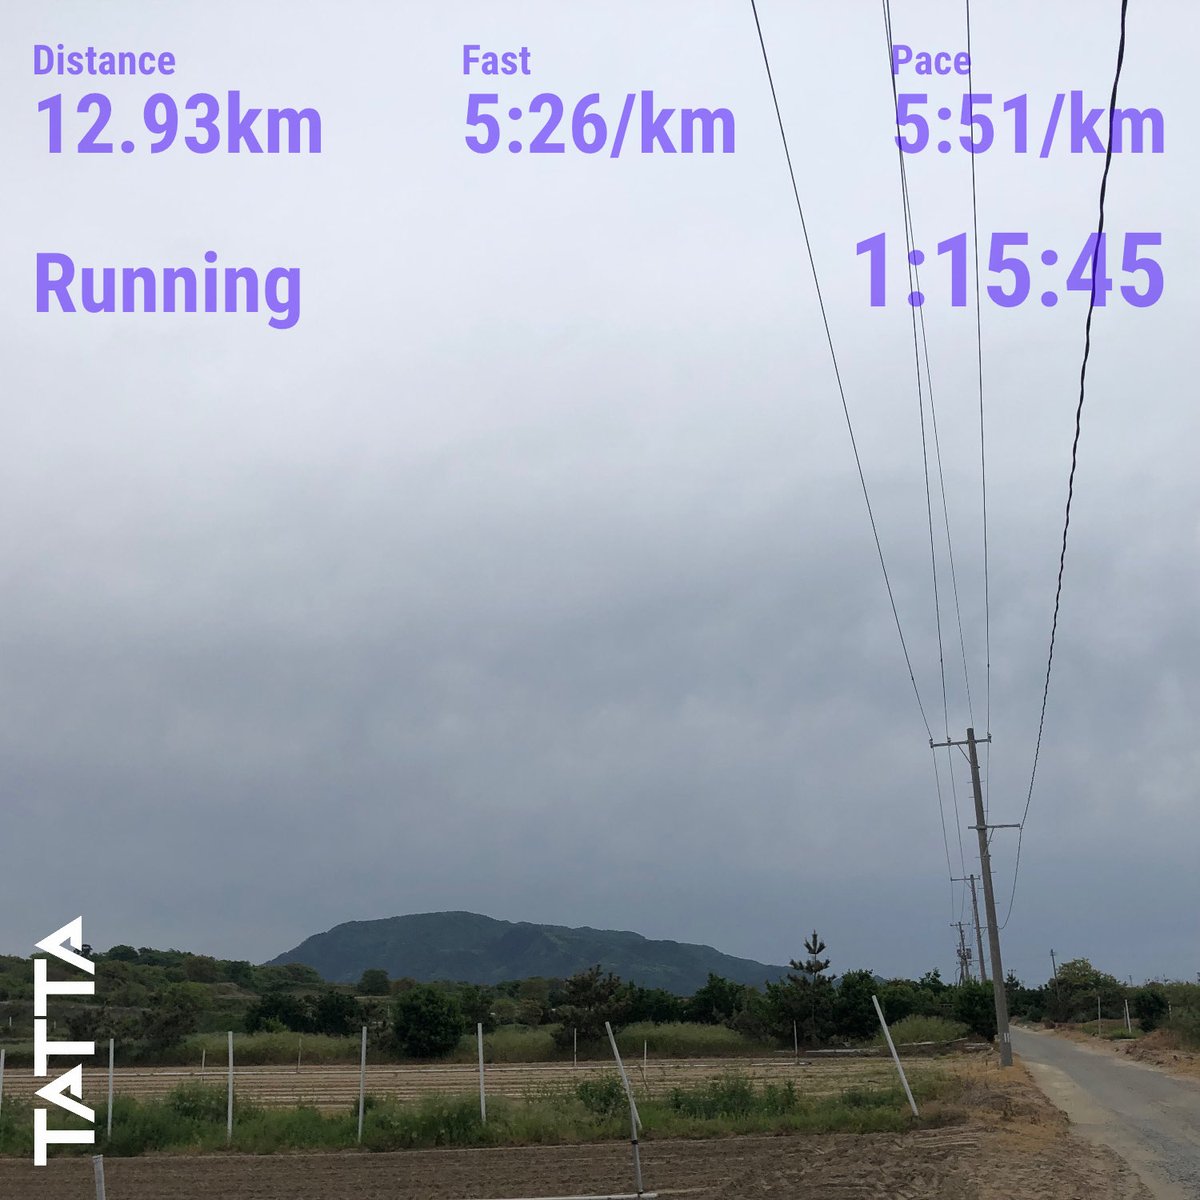 家から6kmの所ですが、角田山がかなり近くに感じました。
いよいよ次の日曜は白根ハーフマラソンです。

#朝ラン
#TATTA